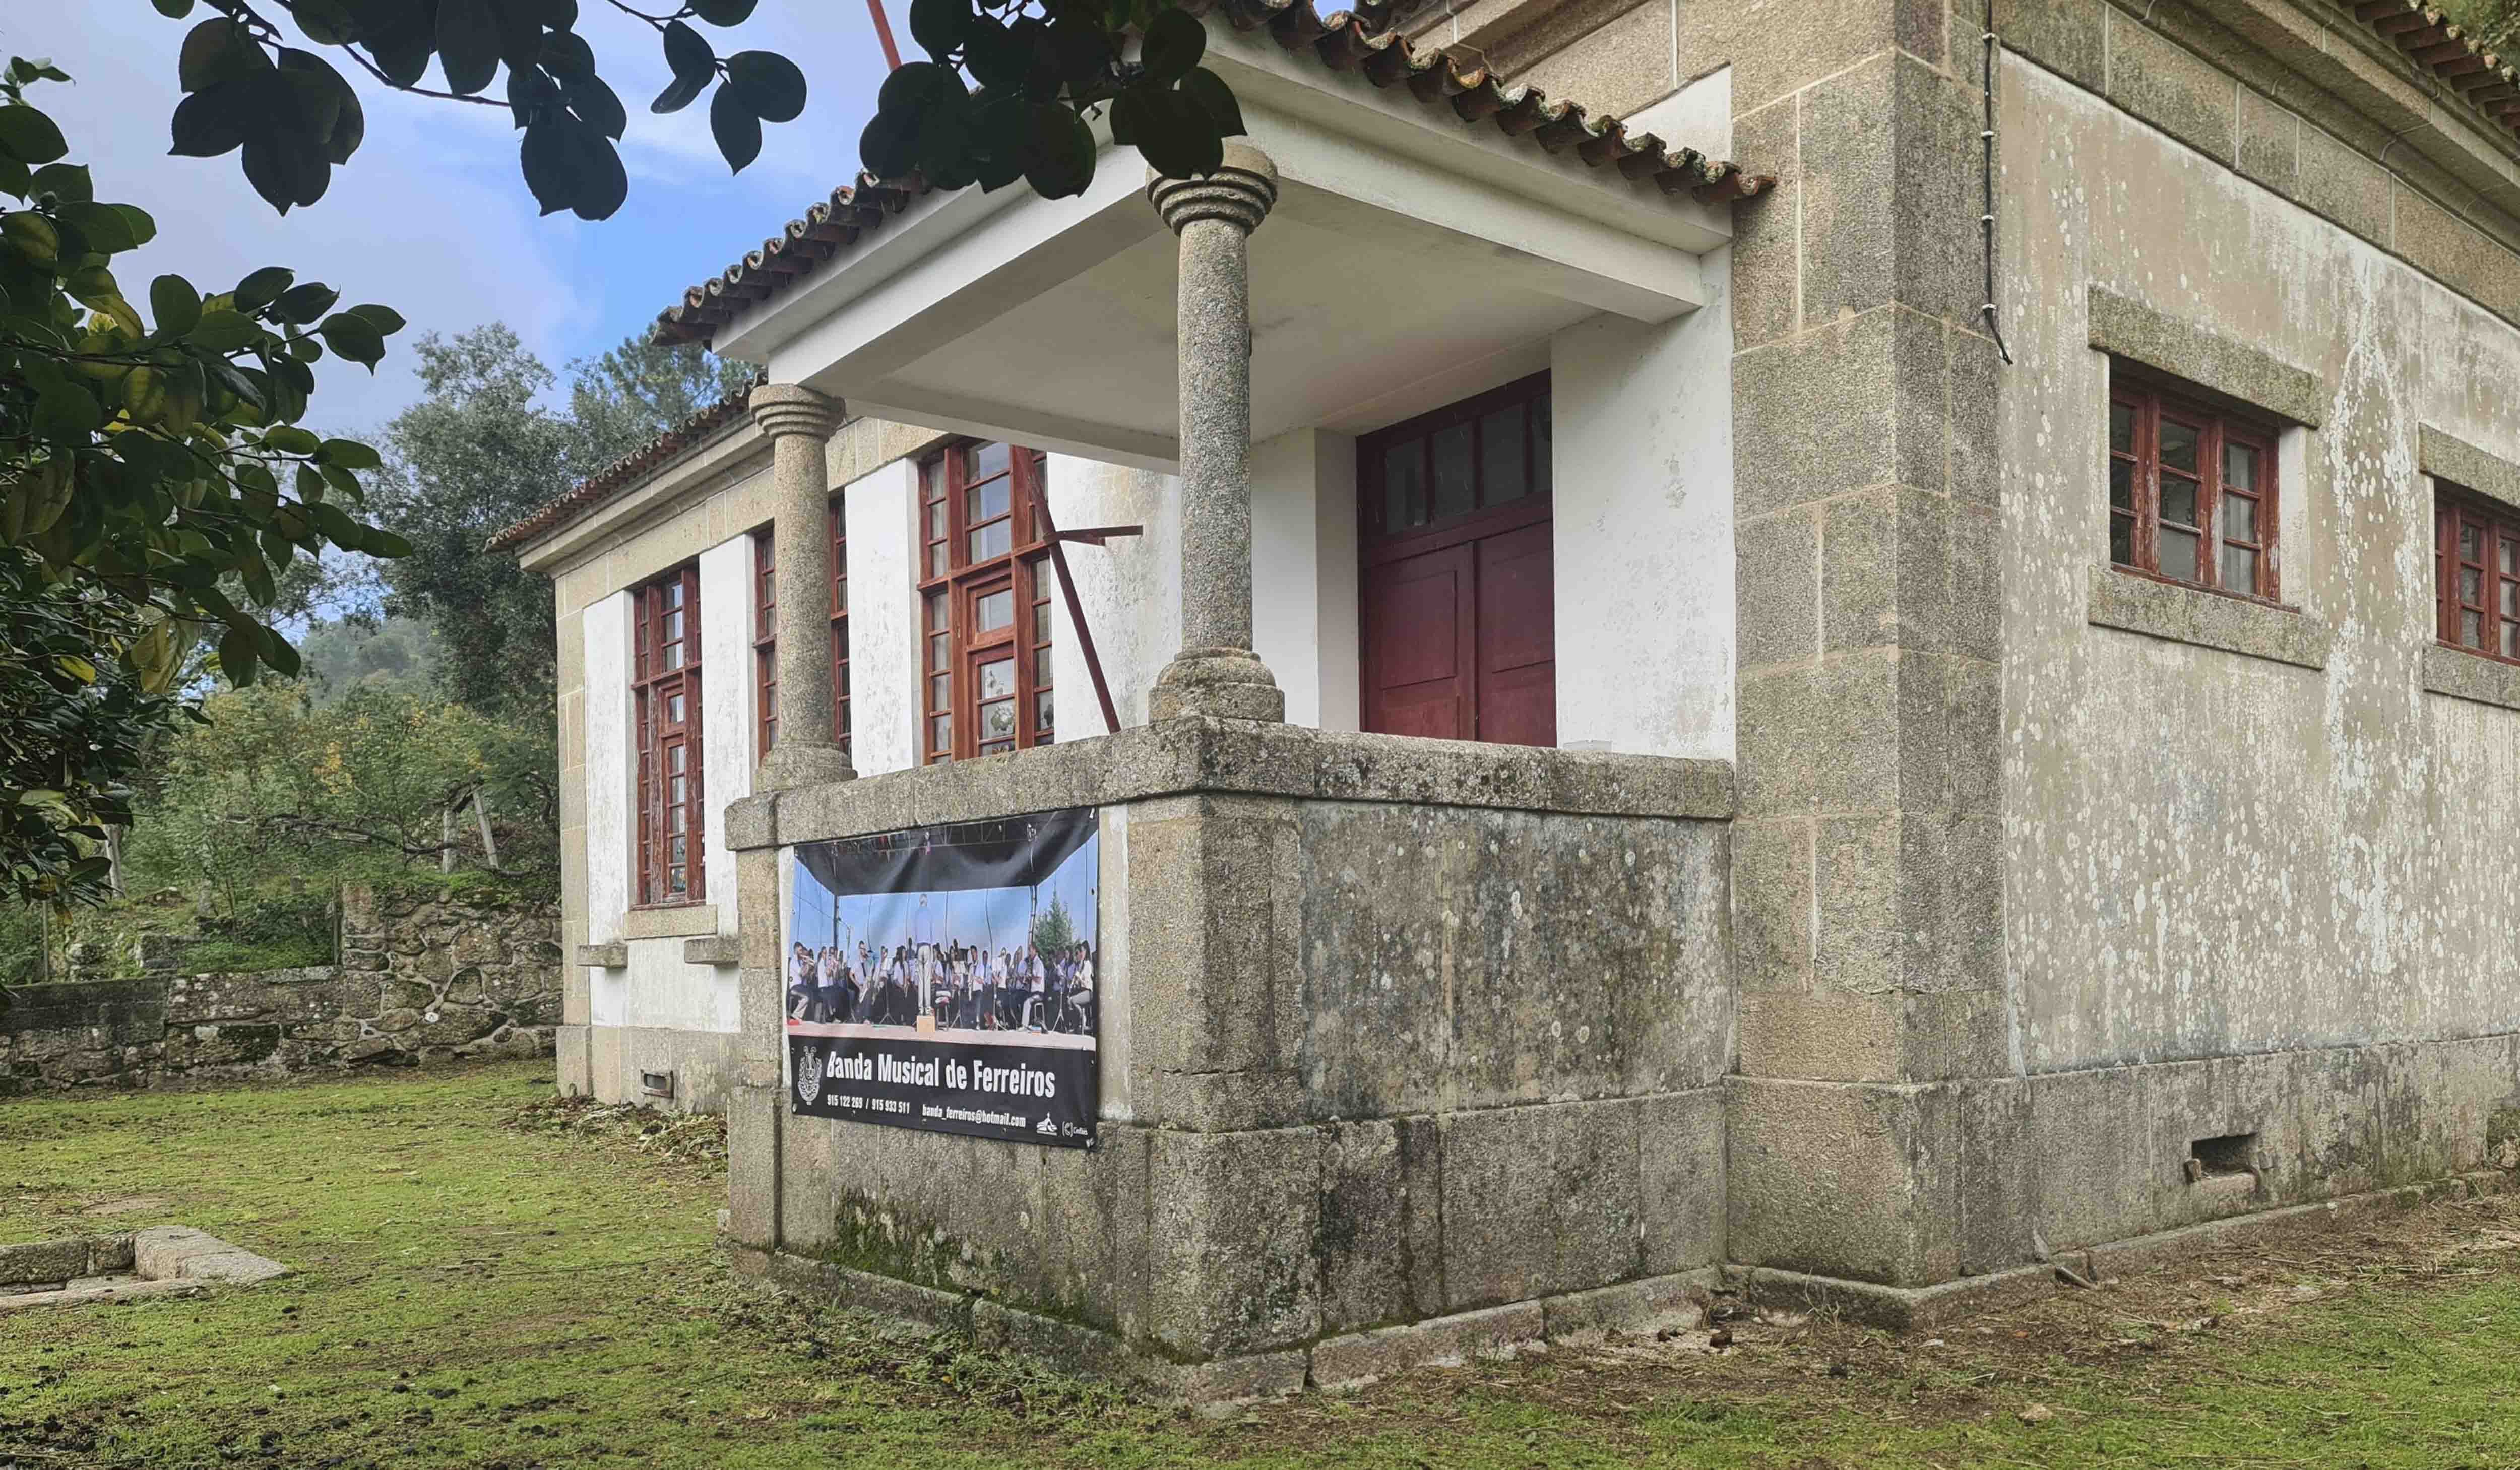 Escola EB1 de Covelas transformada em sede da Banda Musical de Ferreiros